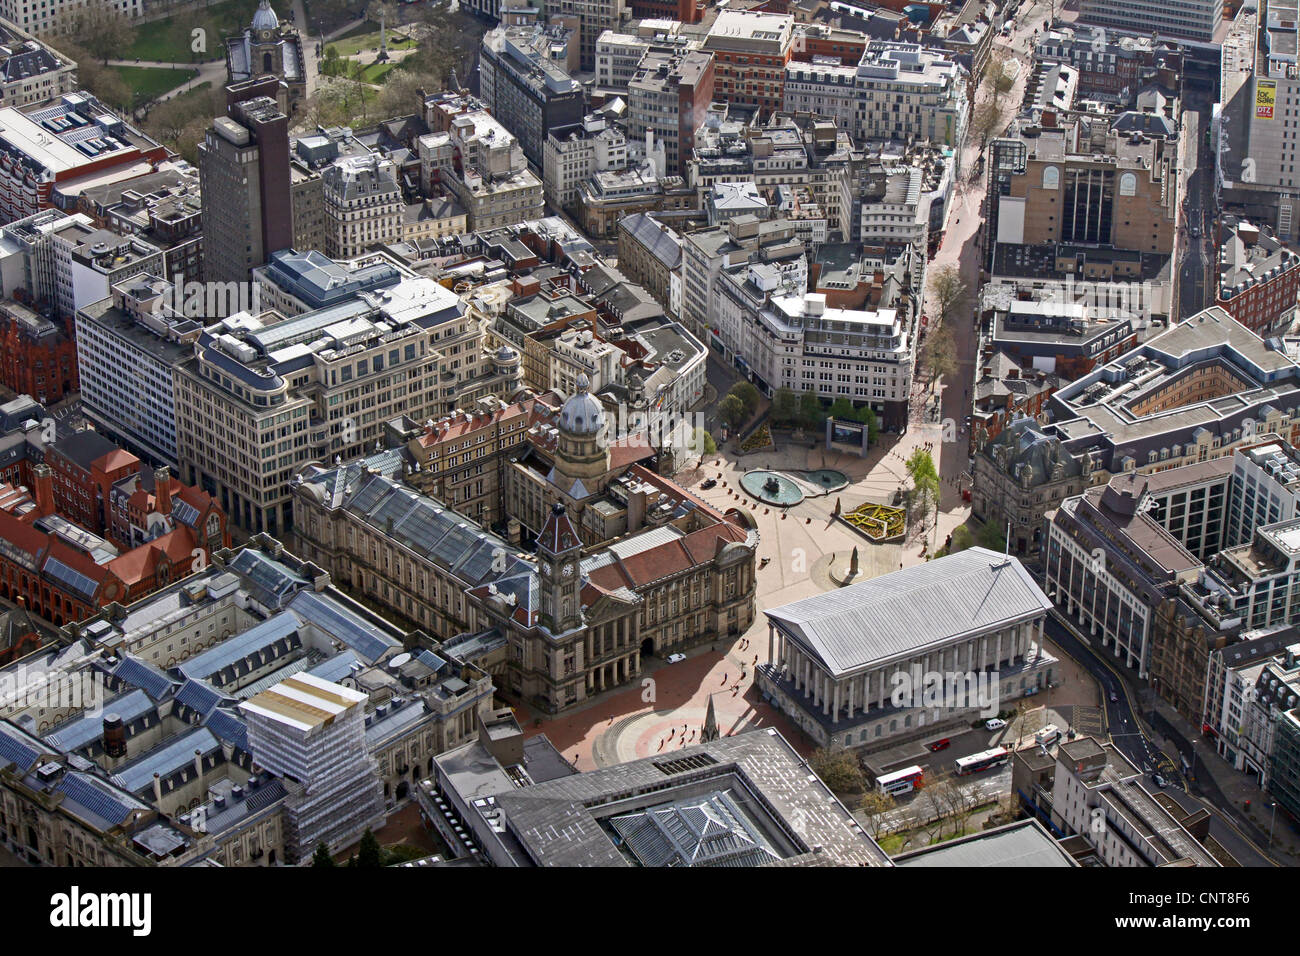 Vista aerea del centro cittadino di Birmingham, Victoria Square, il Museo e Galleria d'arte, International Convention Center Foto Stock